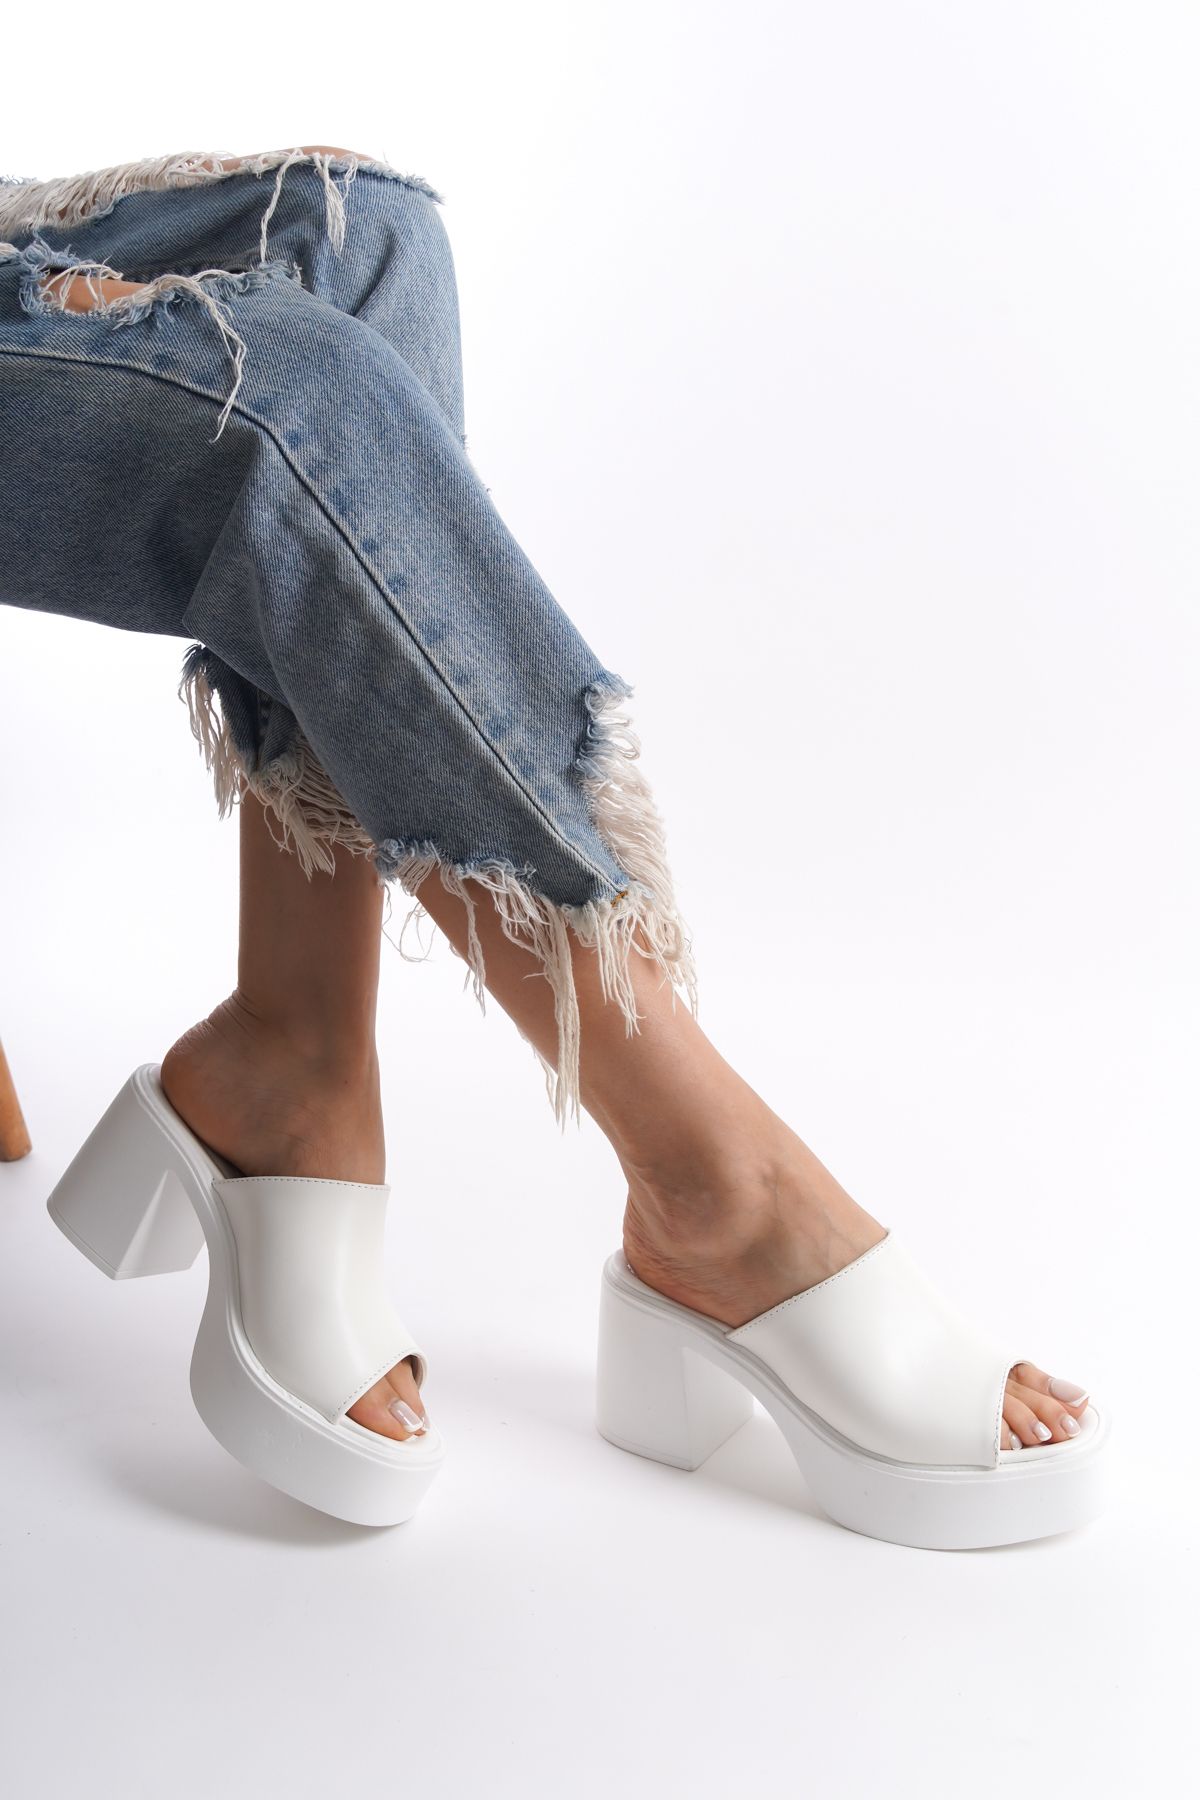 Limeo Beyaz Yüksek Dolgu Topuklu Suni Deri Tek Kalın Şeritli Önü Açık Yazlık Kadın Terlik Sandalet